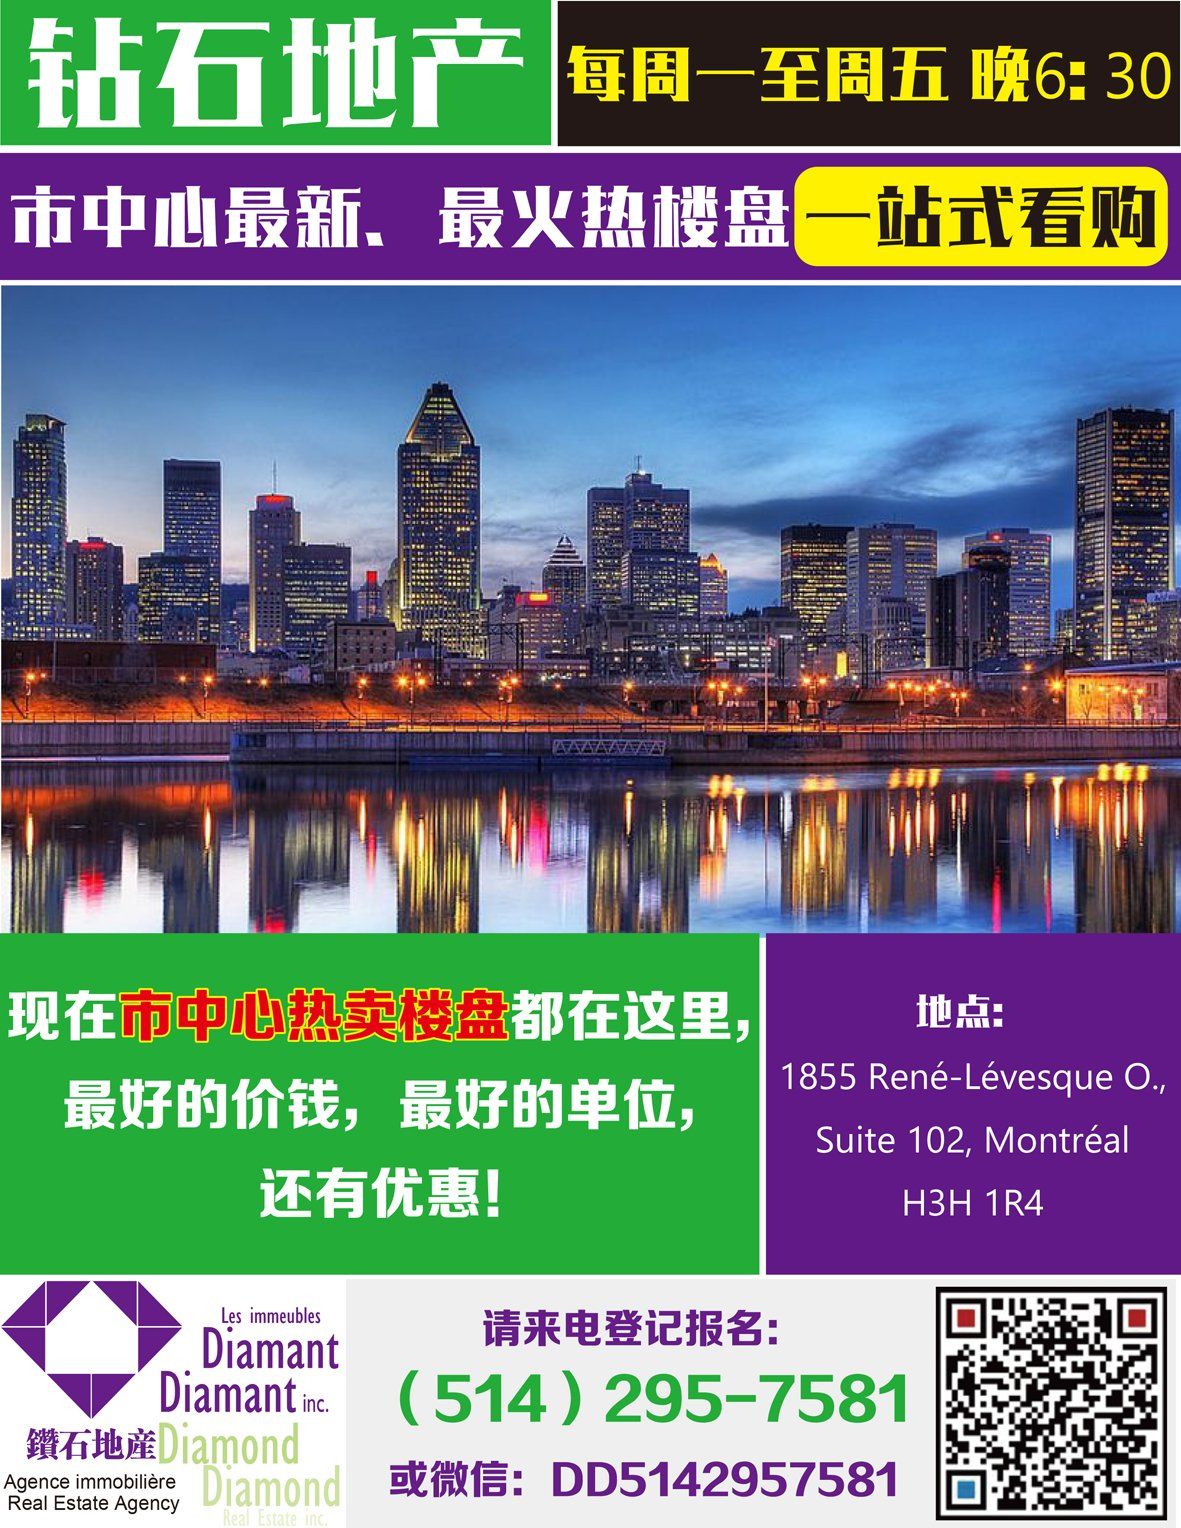 WeChat Image_20170926101948.jpg